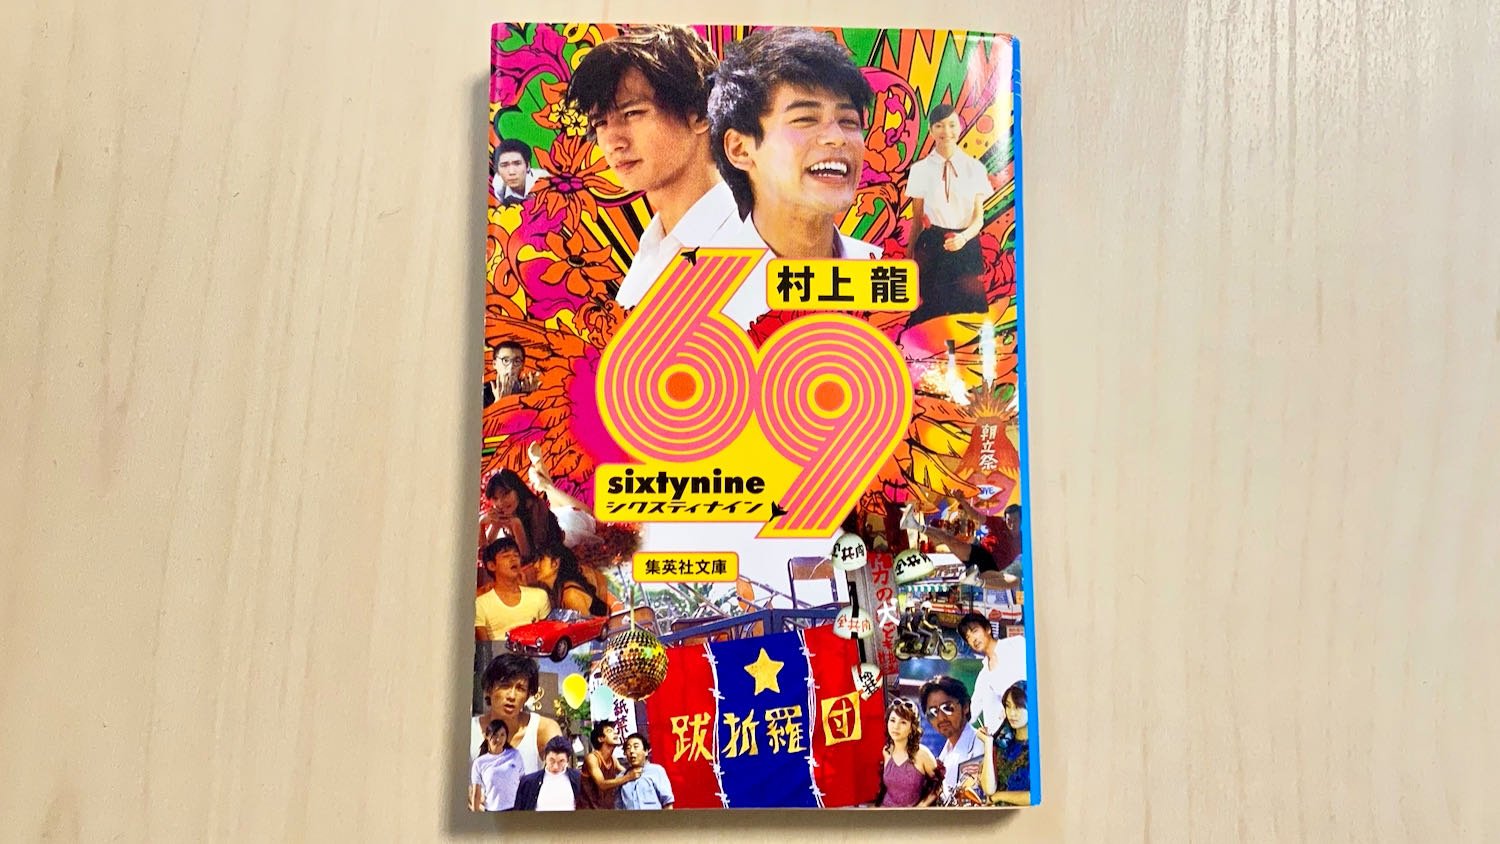 小説「69 sixty nine」by 村上龍